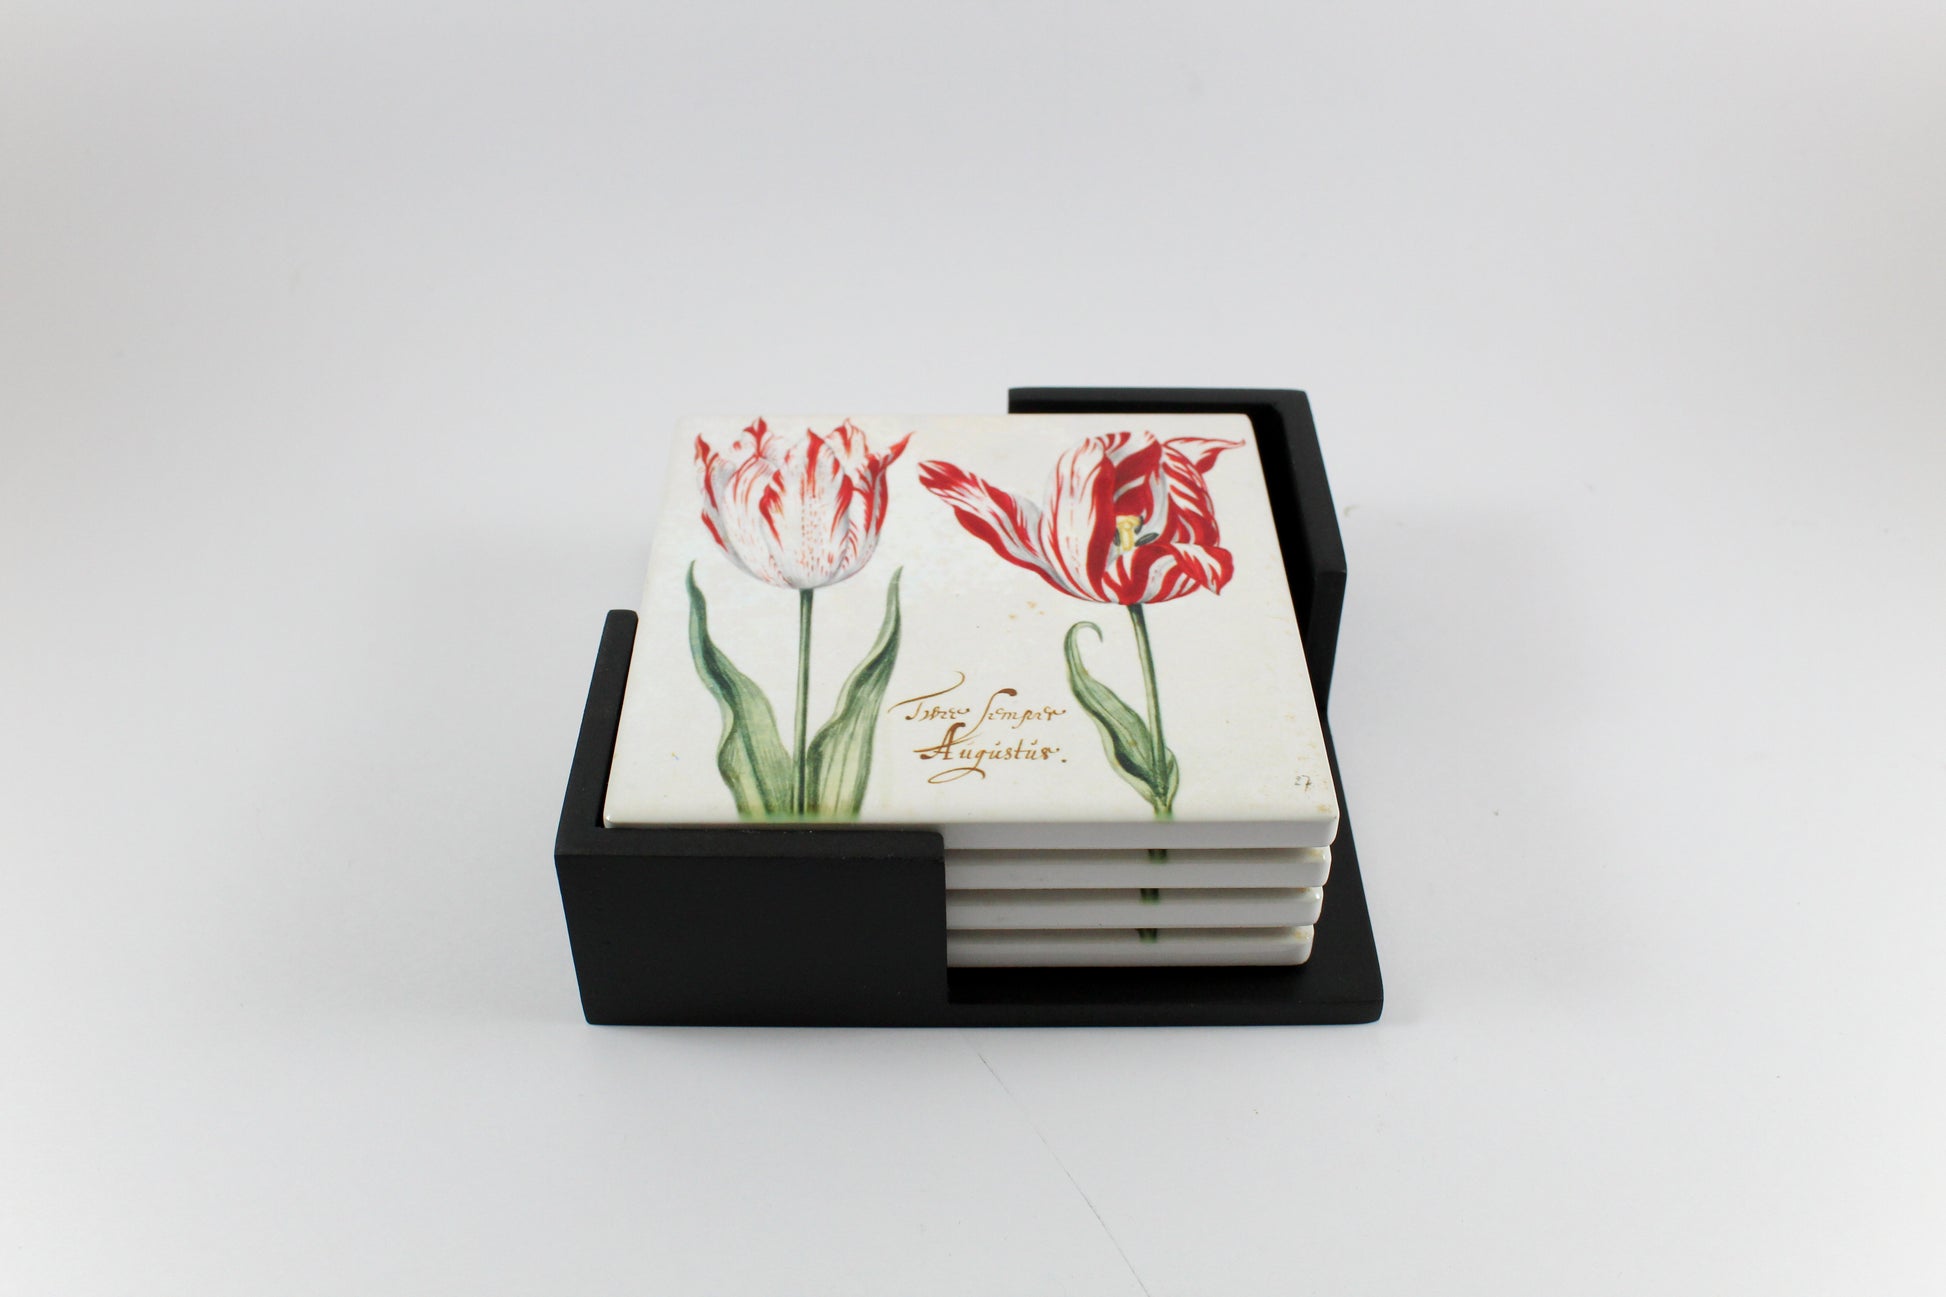 Amsterdam Tulip Museum Semper Augustus Tulip On White Ceramic Coaster Set